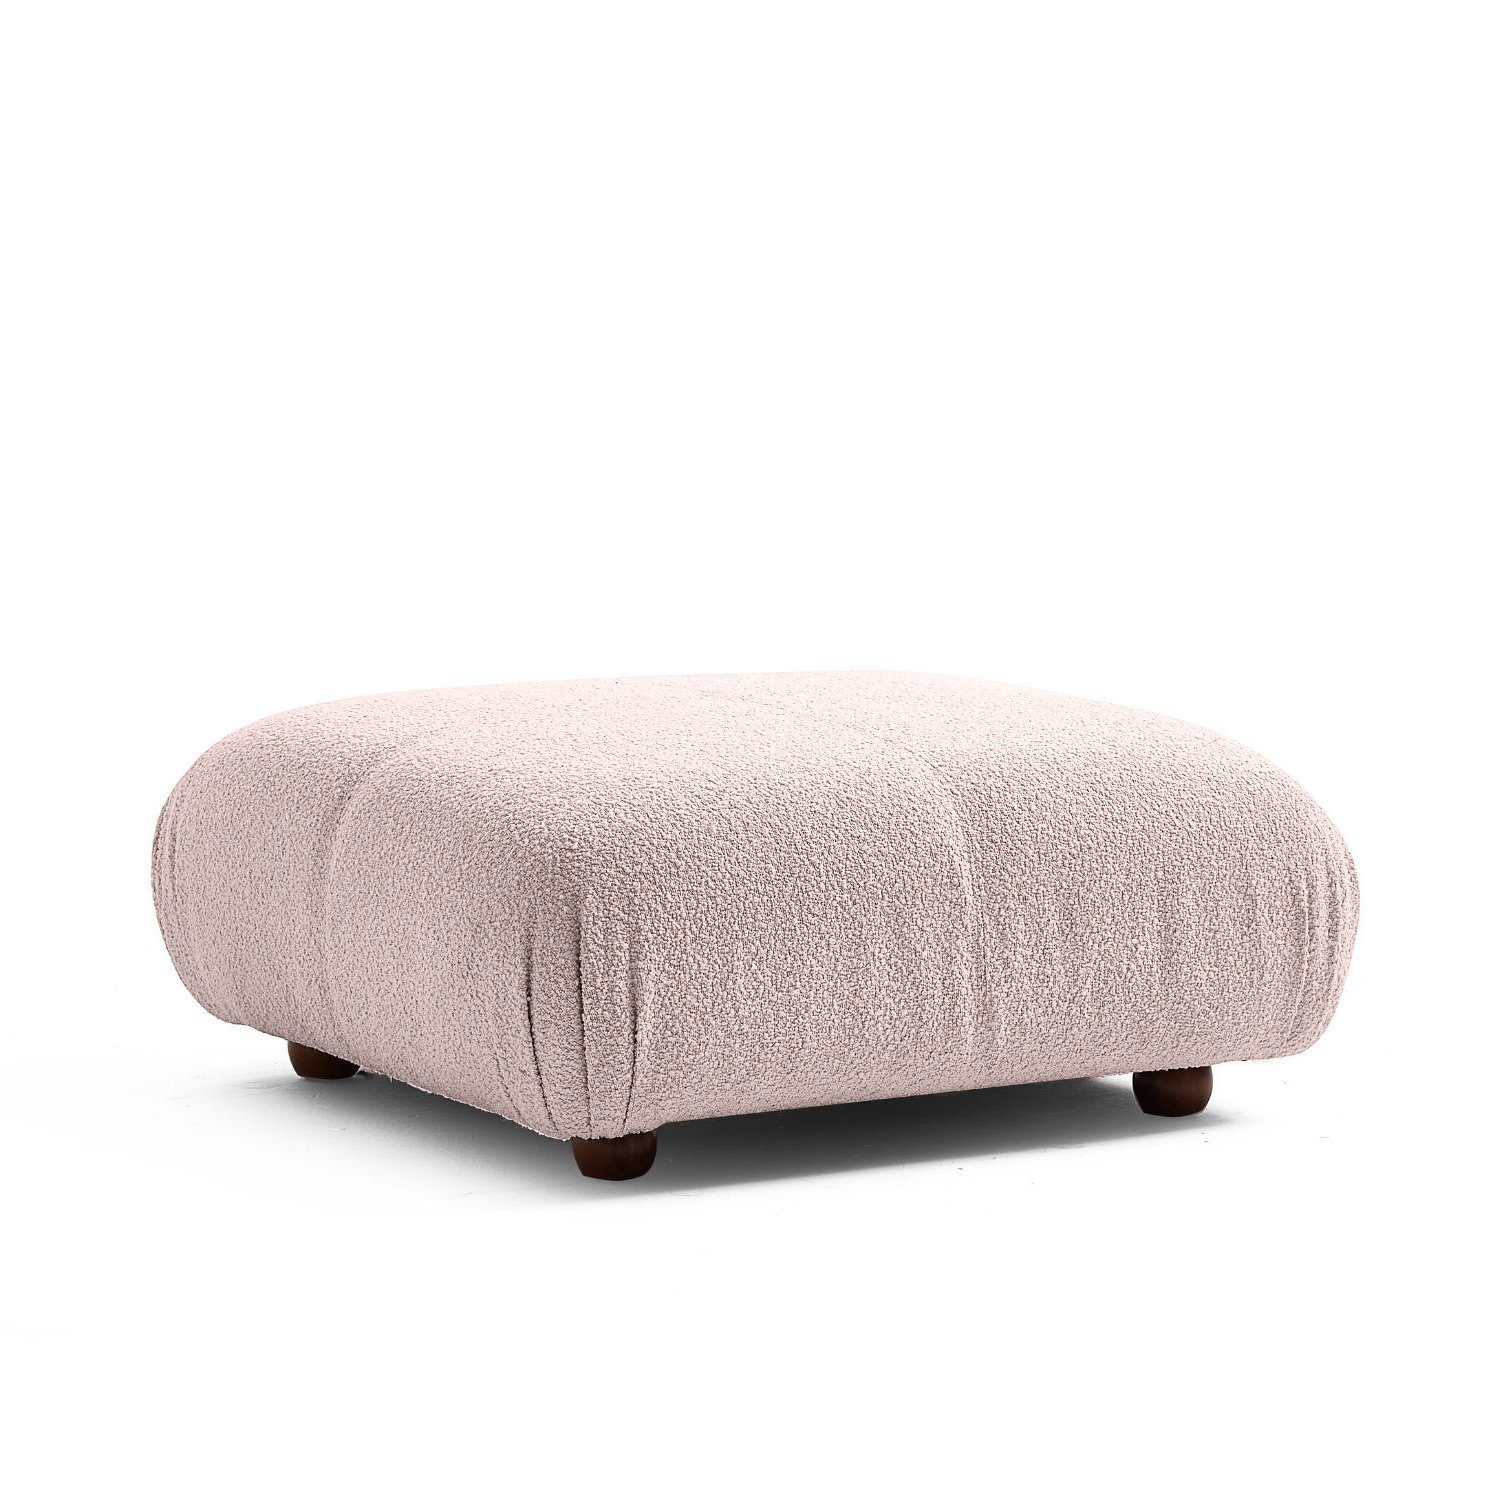 Touch me Sofa Knuffiges Sitzmöbel neueste Generation aus Komfortschaum Hellrosa-Lieferung und Aufbau im Preis enthalten!